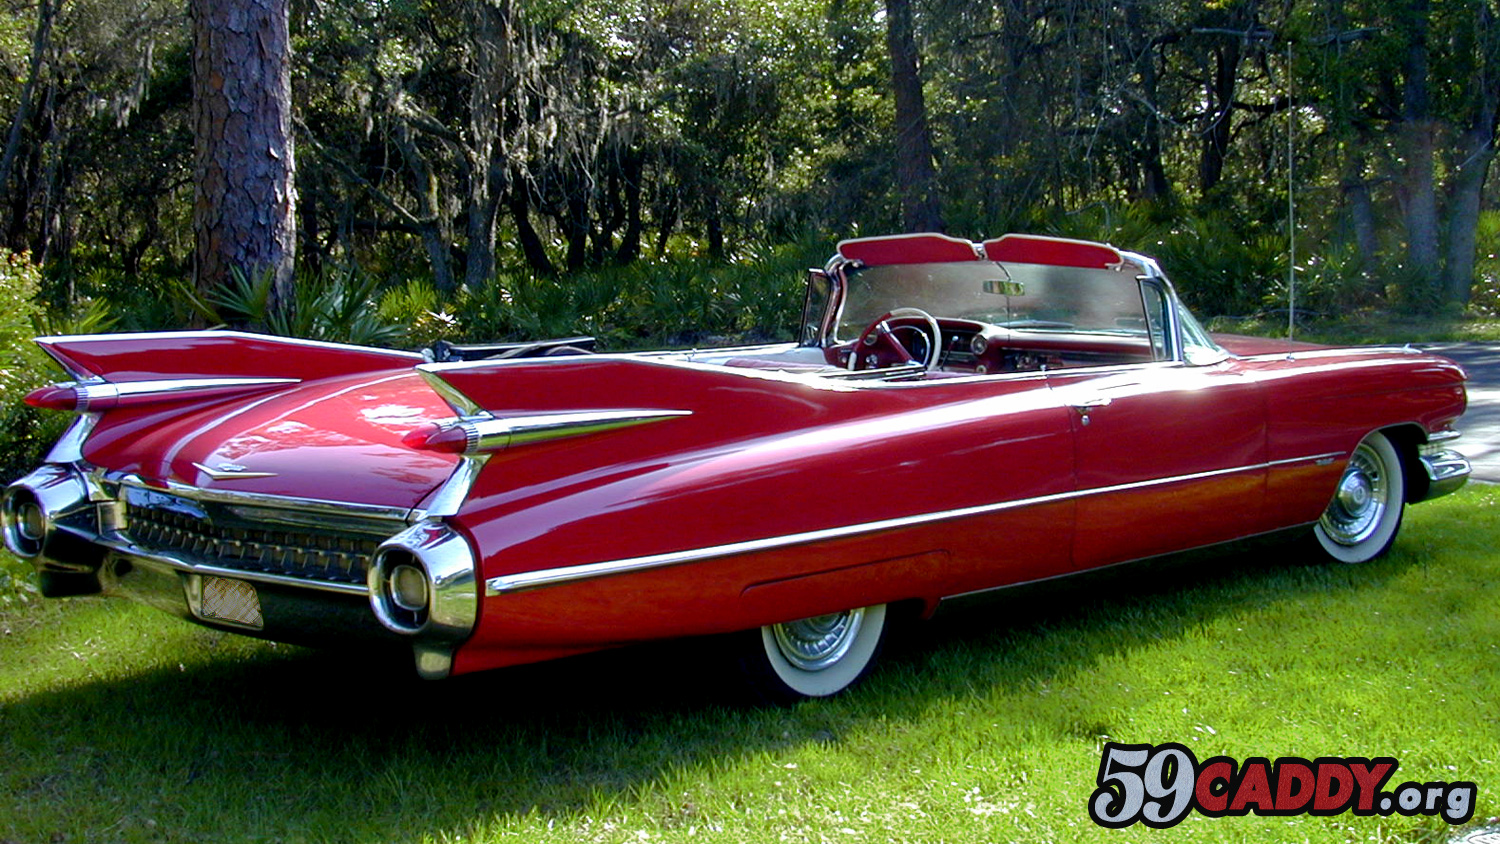 Red 1959 Cadillac Convertible 1959 Red Cadillac Convertible